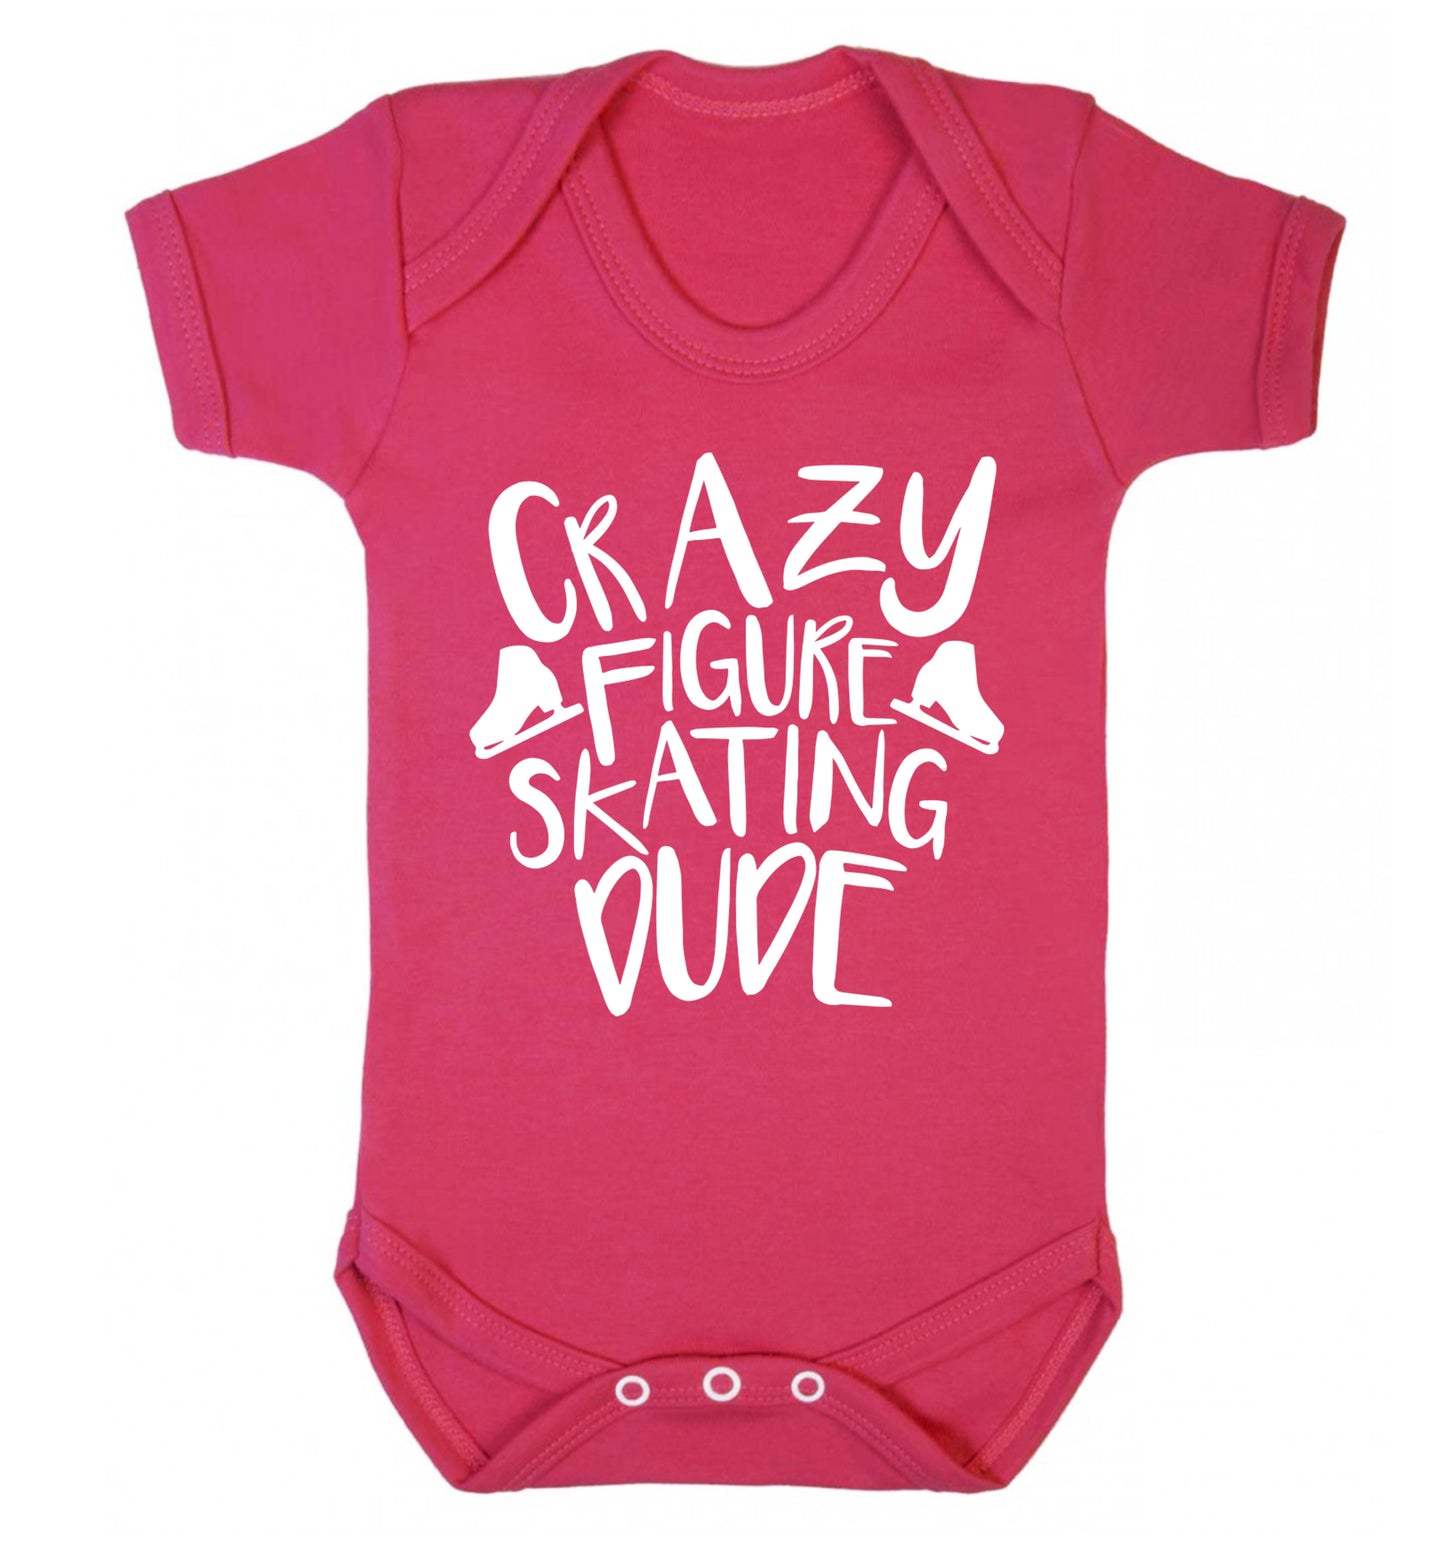 Crazy figure skating dude Baby Vest dark pink 18-24 months